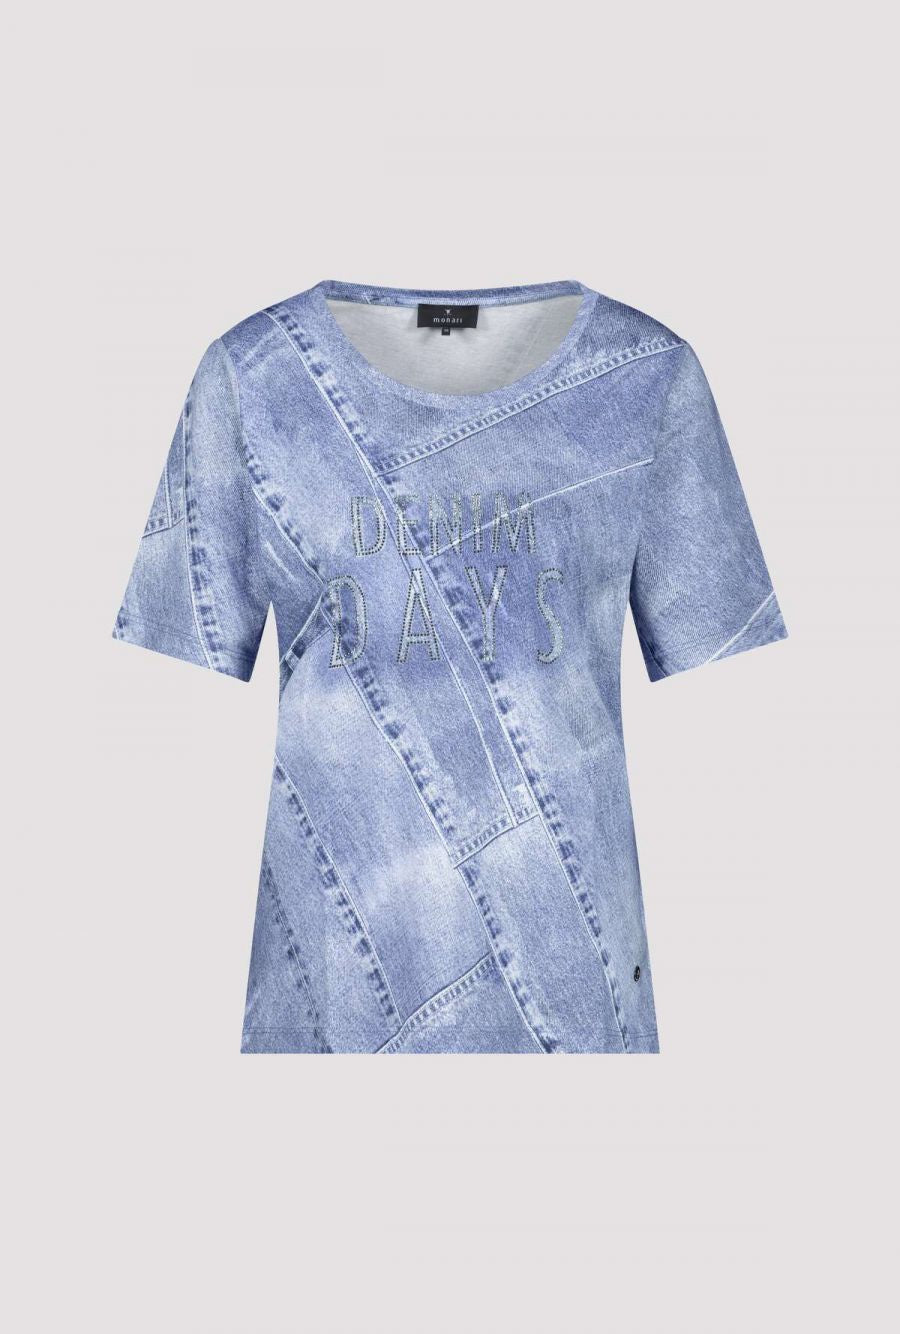 Monari Denim Print T-Shirt In Blue